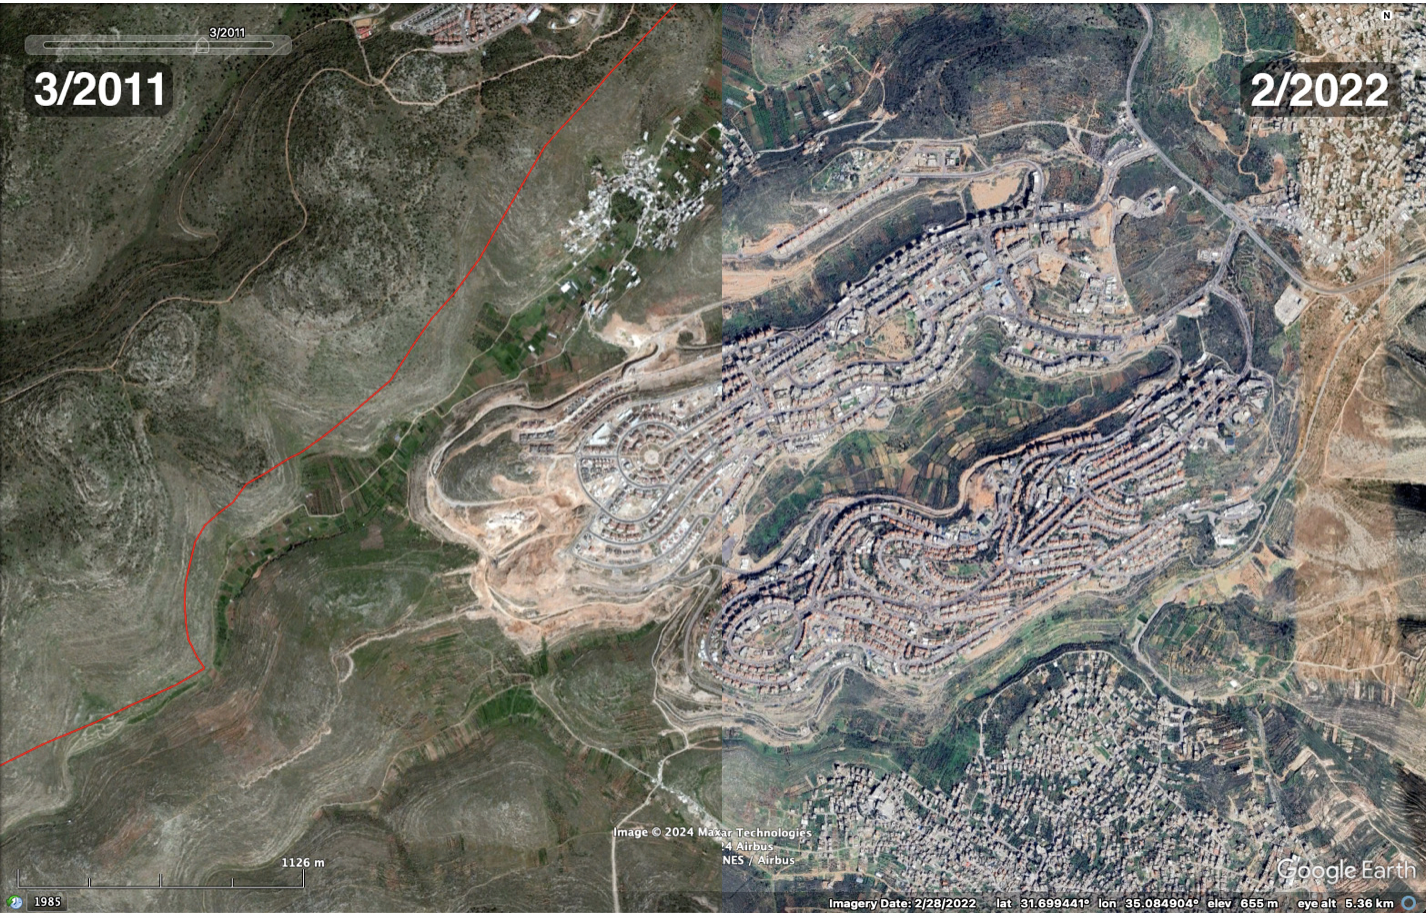 المقارنة بين شكل المستوطنة عام 2011 وشكلها مطلع عام 2022 باستخدام صور الأقمار الصناعية - جوجل إيرث برو